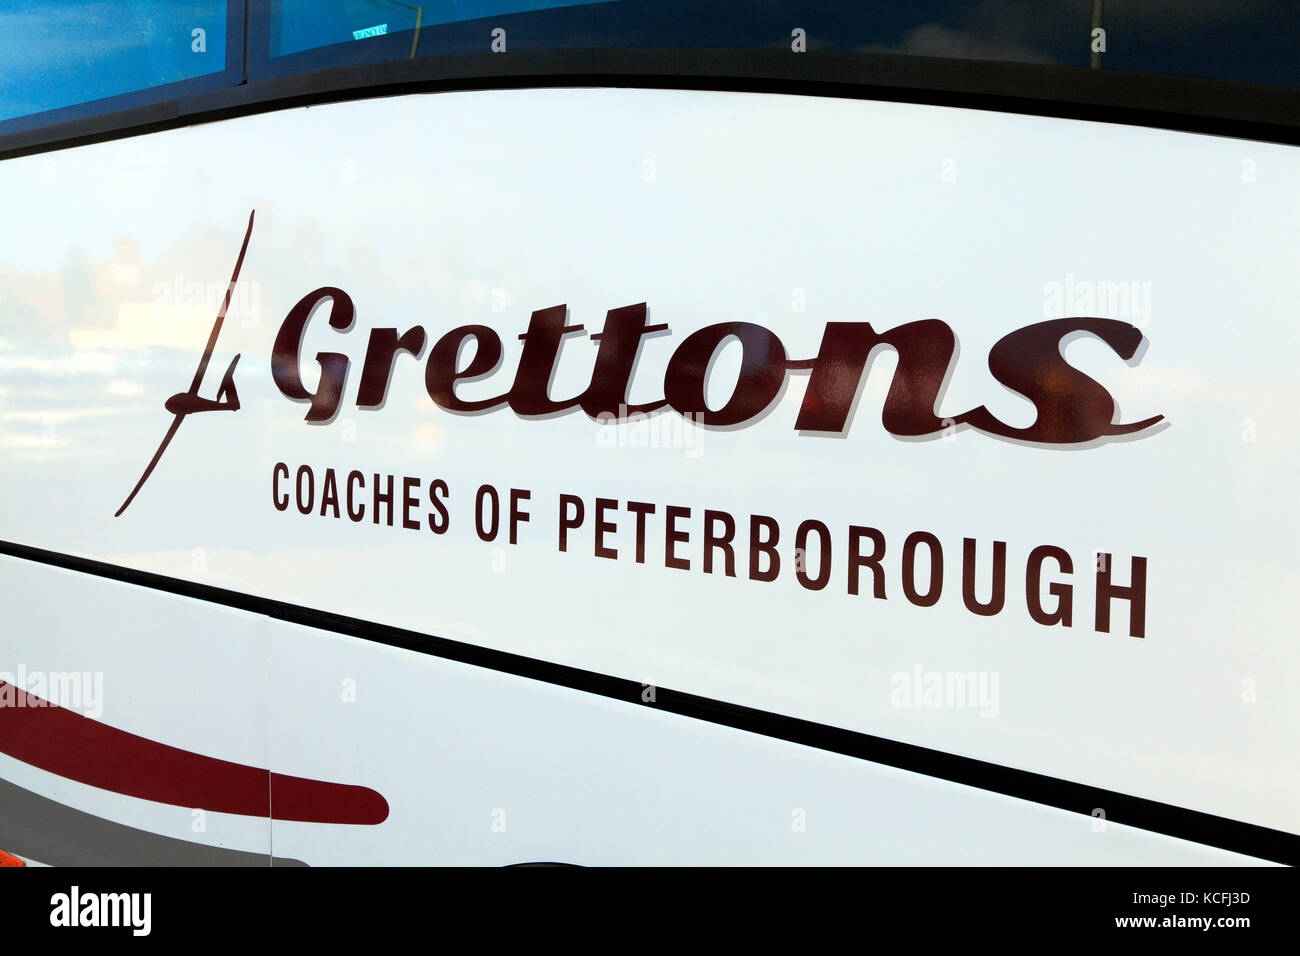 Grettons Allenatori di Peterborough, pullman, escursioni, gite, escursioni, escursioni, vacanze, vacanze, agenzia di viaggi, compagnie di trasporto bus, Foto Stock